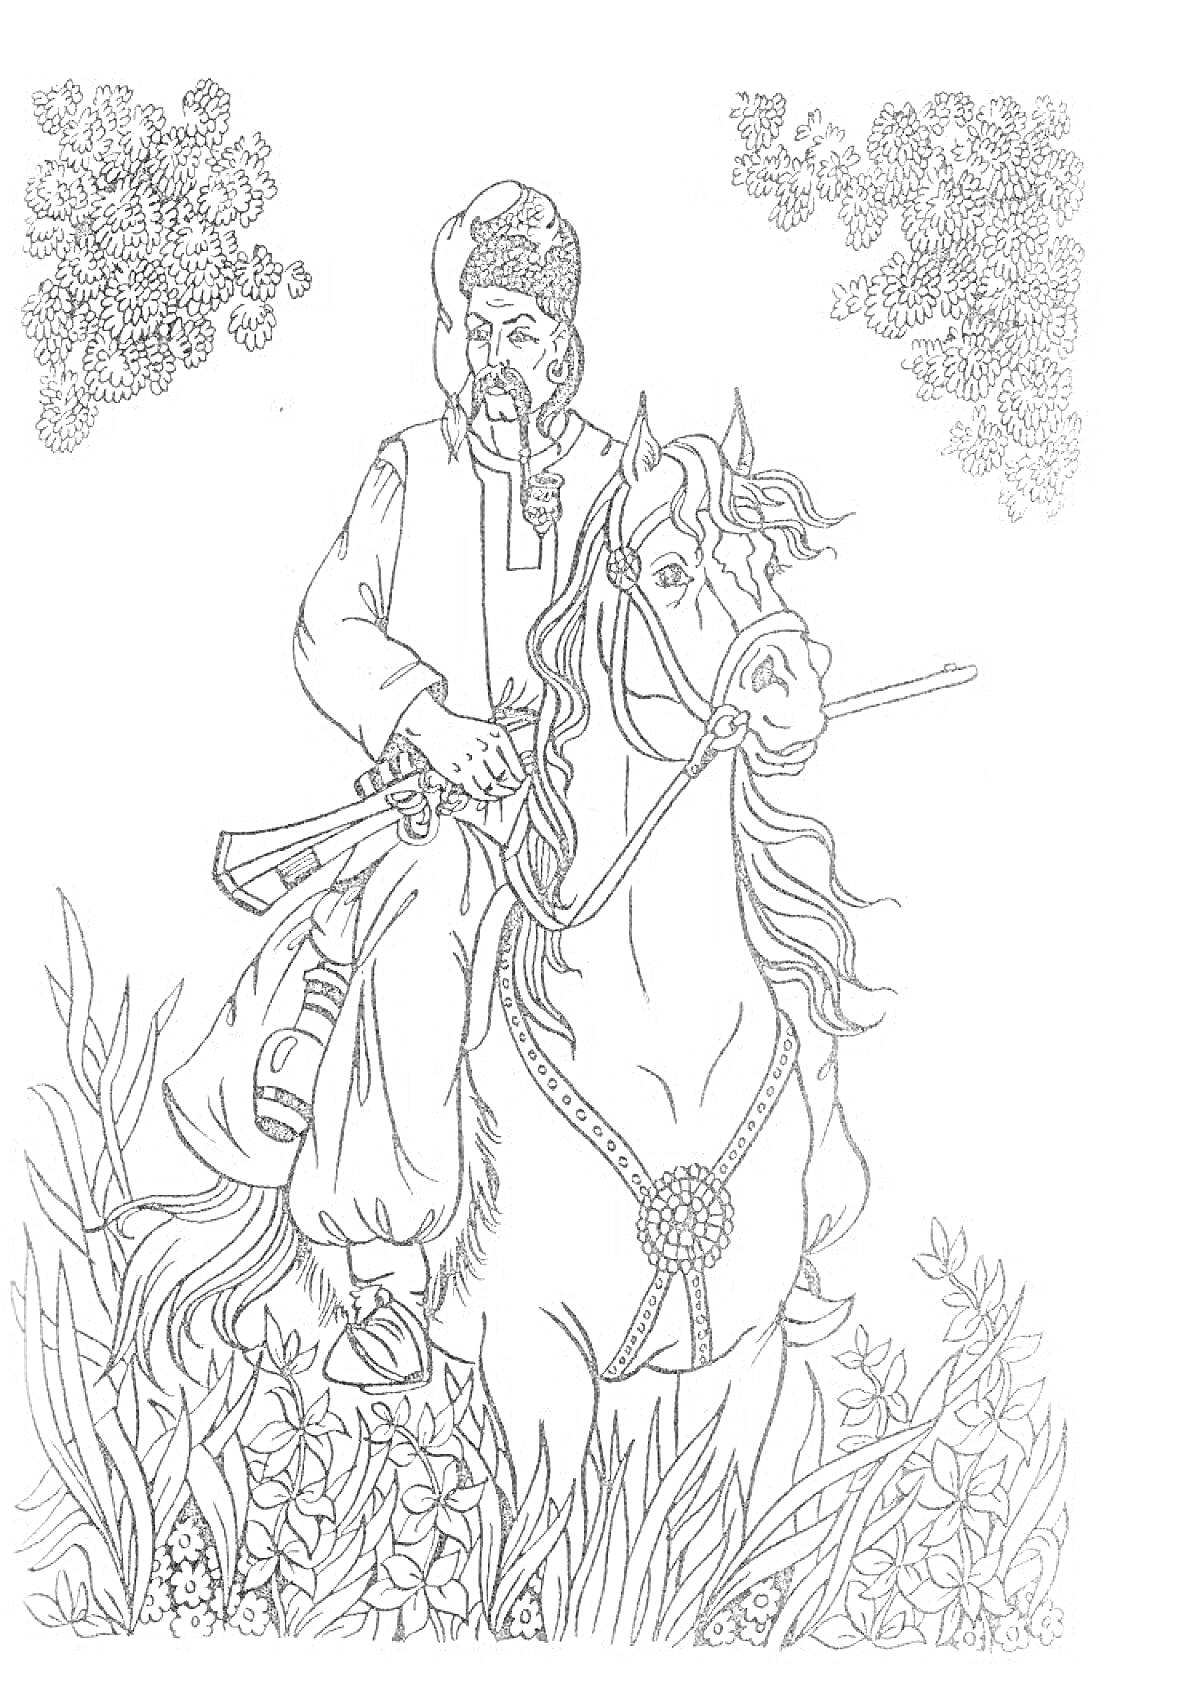 Тарас Бульба на лошади среди растительности и деревьев